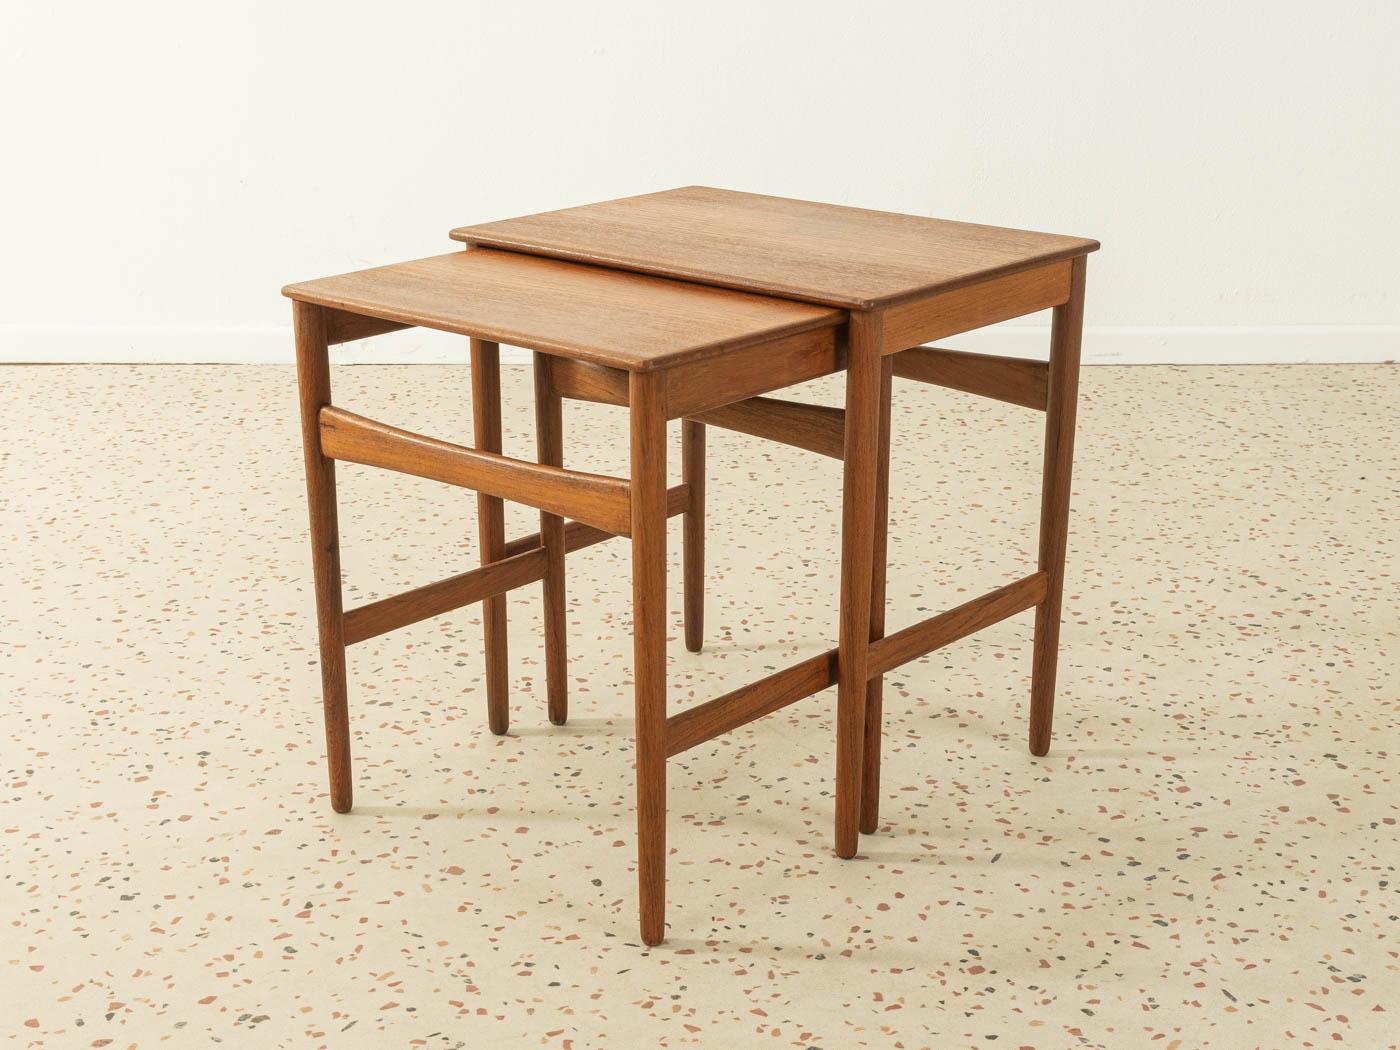 Wood Hans J. Wegner for Andreas Tuck Nesting Tables, 1960s, Denmark For Sale